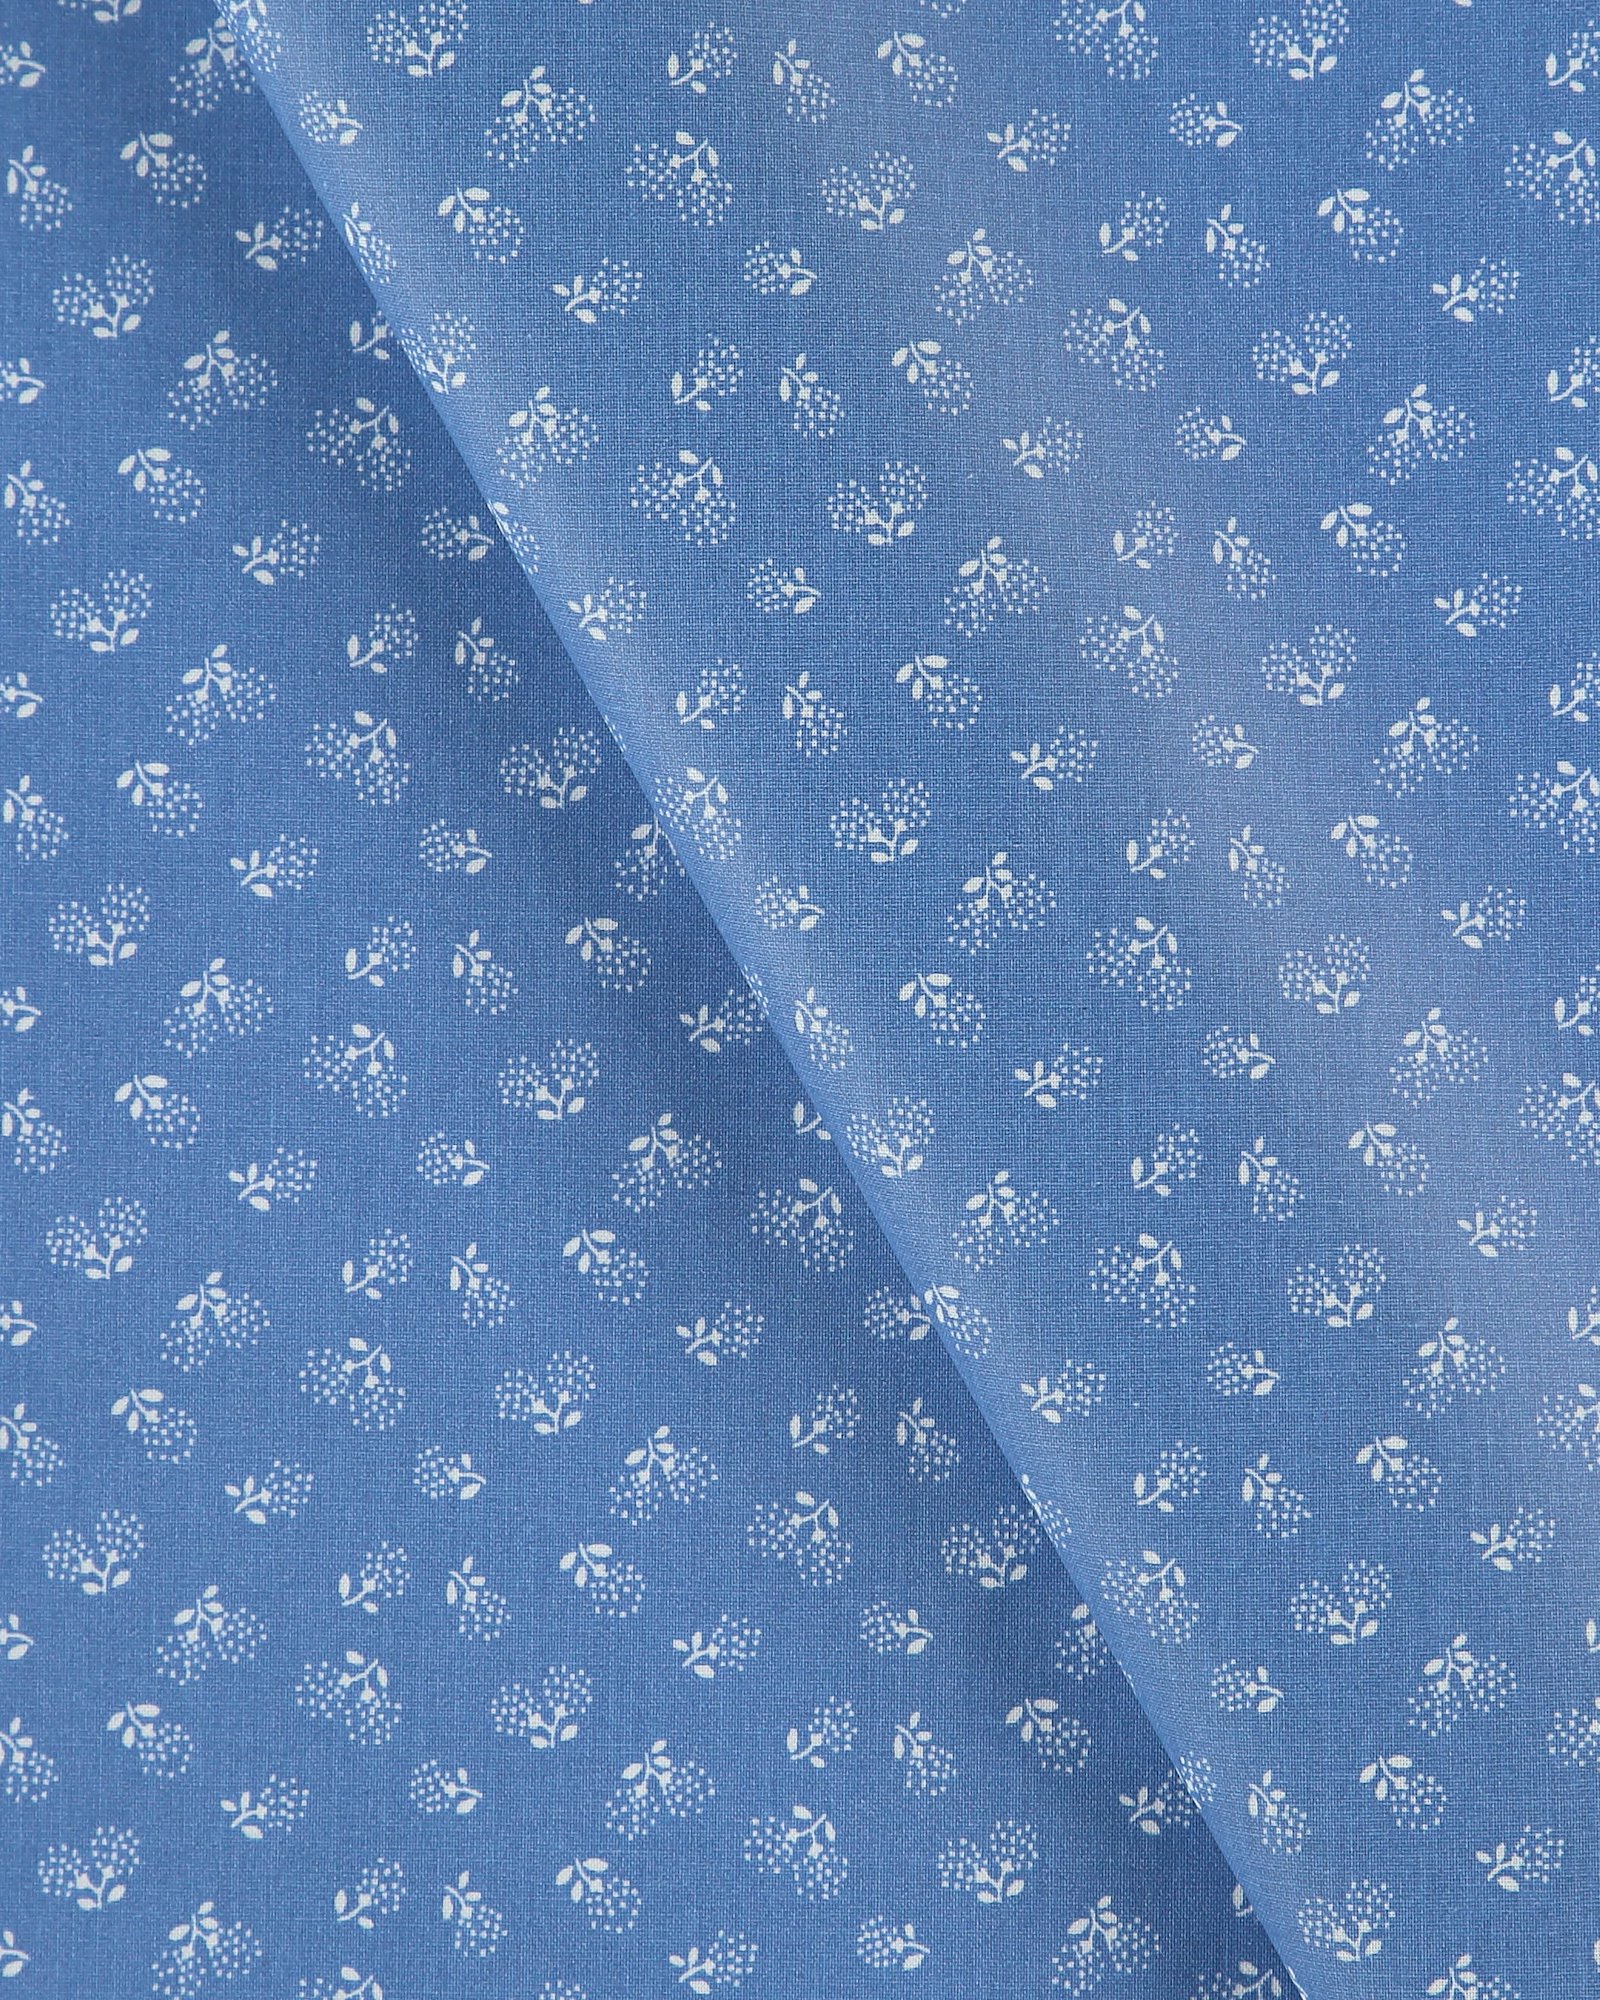 Tekstilvoksduk kobolt blå m blomster 866120_pack